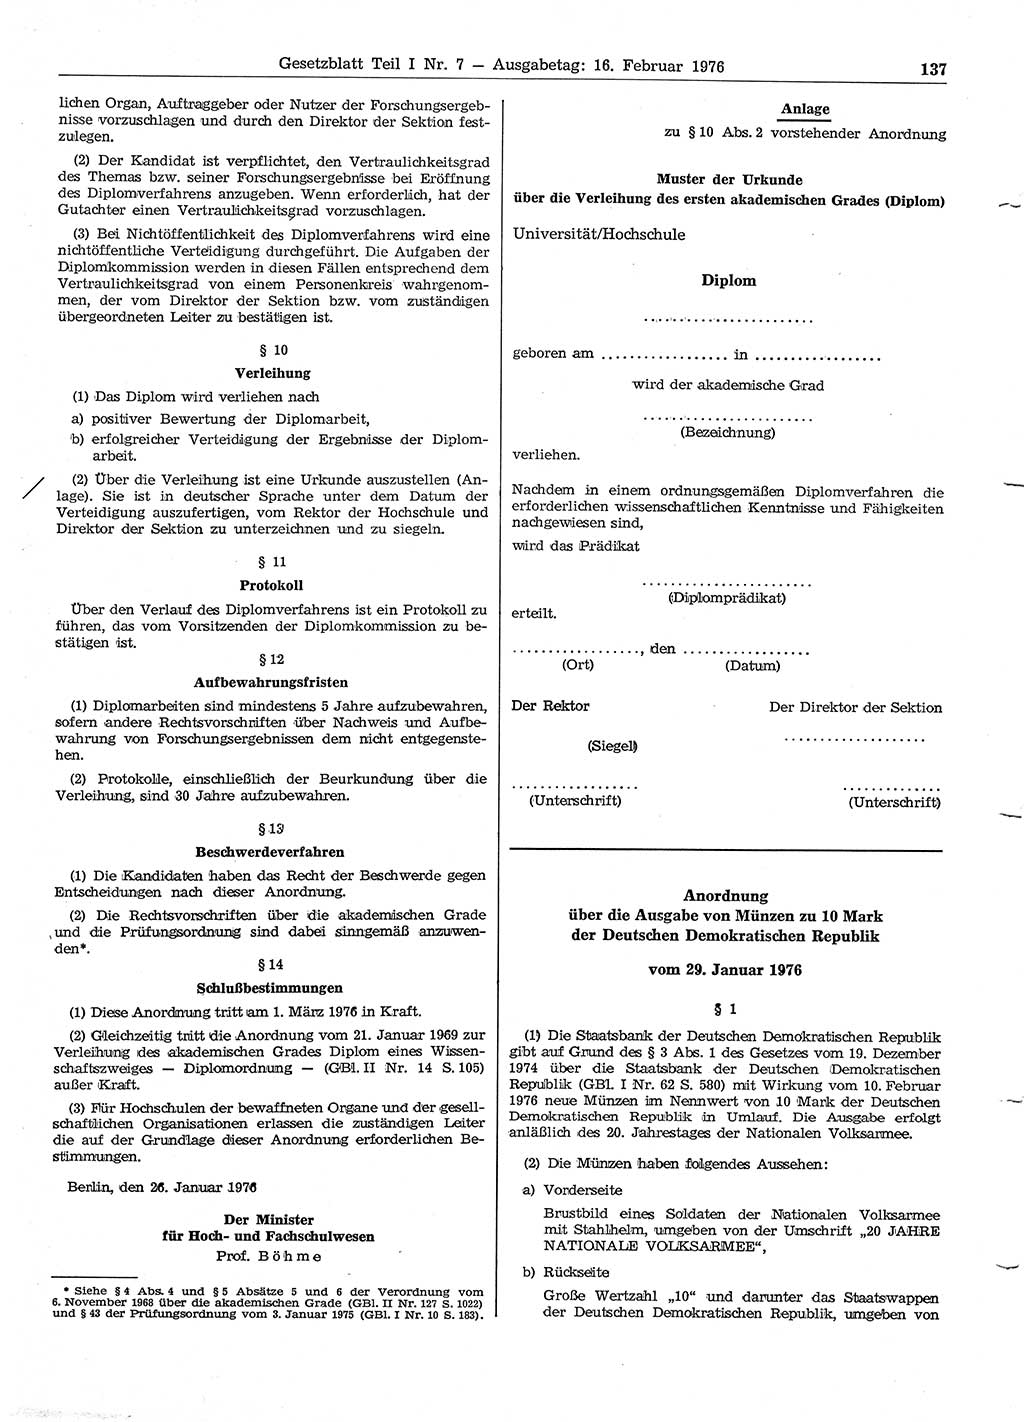 Gesetzblatt (GBl.) der Deutschen Demokratischen Republik (DDR) Teil Ⅰ 1976, Seite 137 (GBl. DDR Ⅰ 1976, S. 137)